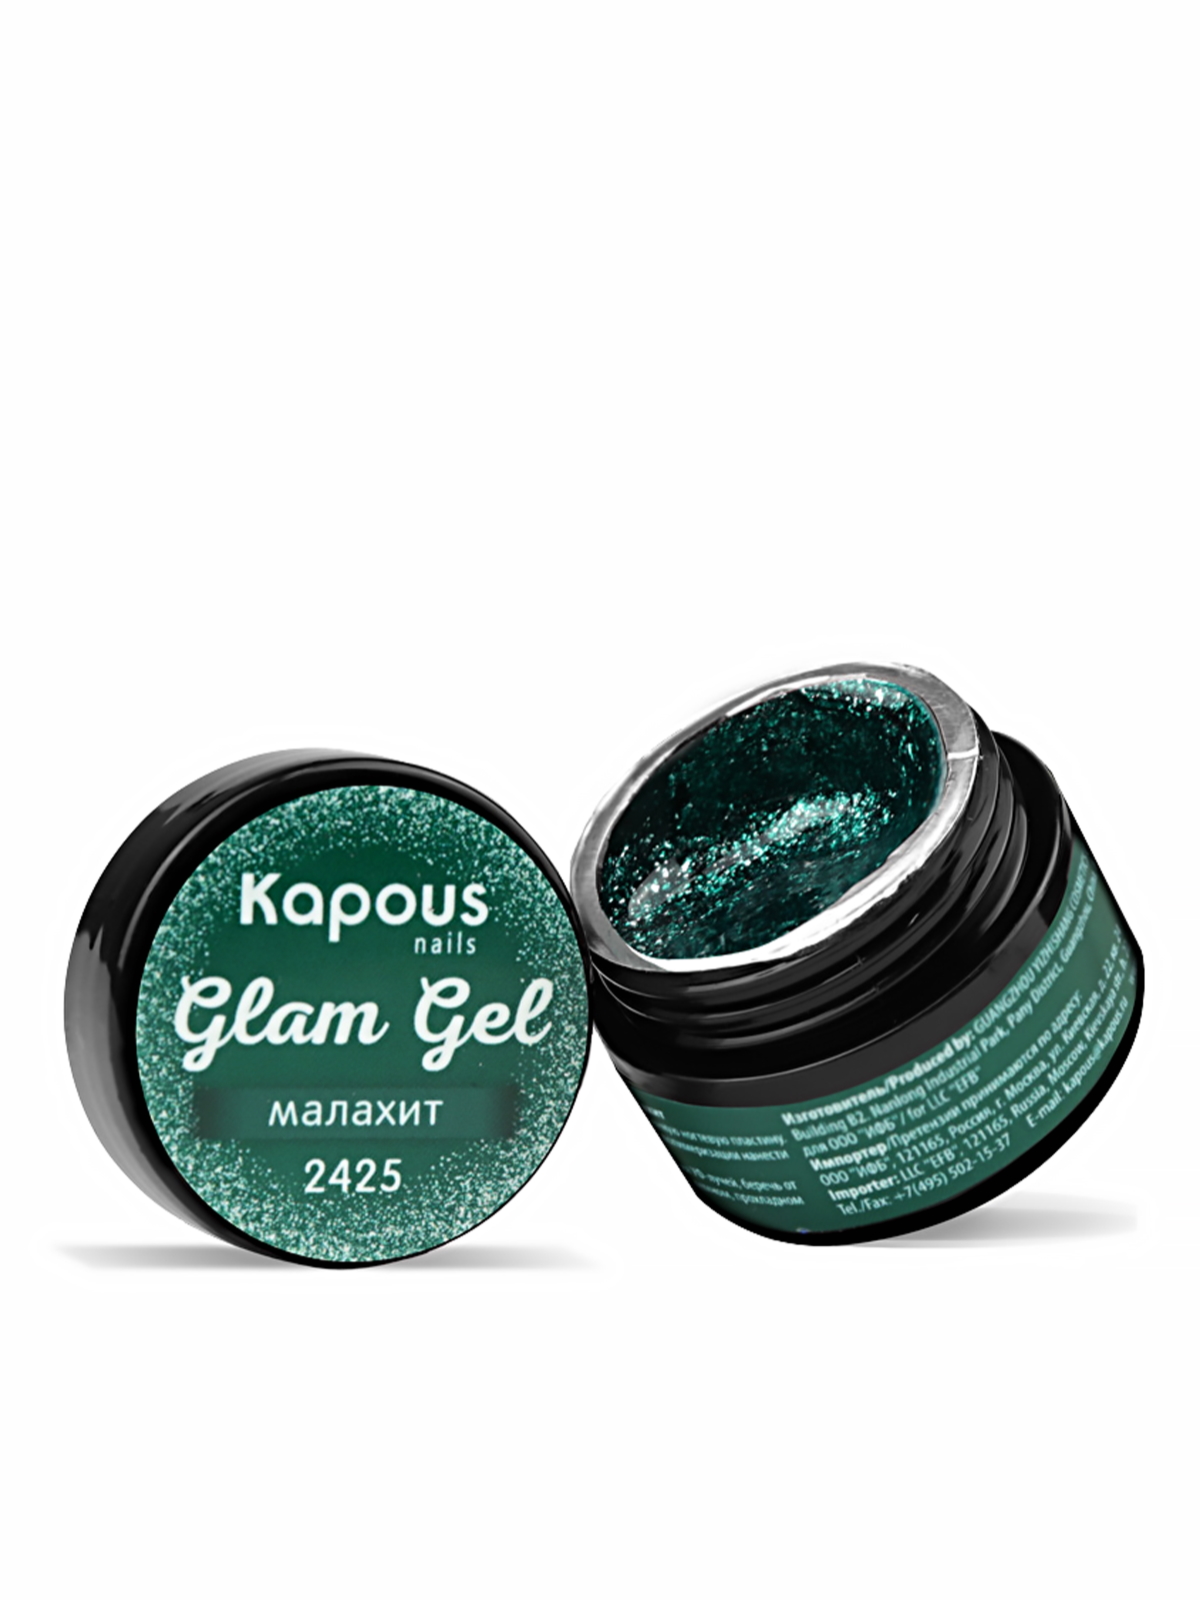 Гель-краска GLAM GEL для ногтей KAPOUS PROFESSIONAL 2425 малахит 5 мл лак краска для стемпинга irisk classic 004